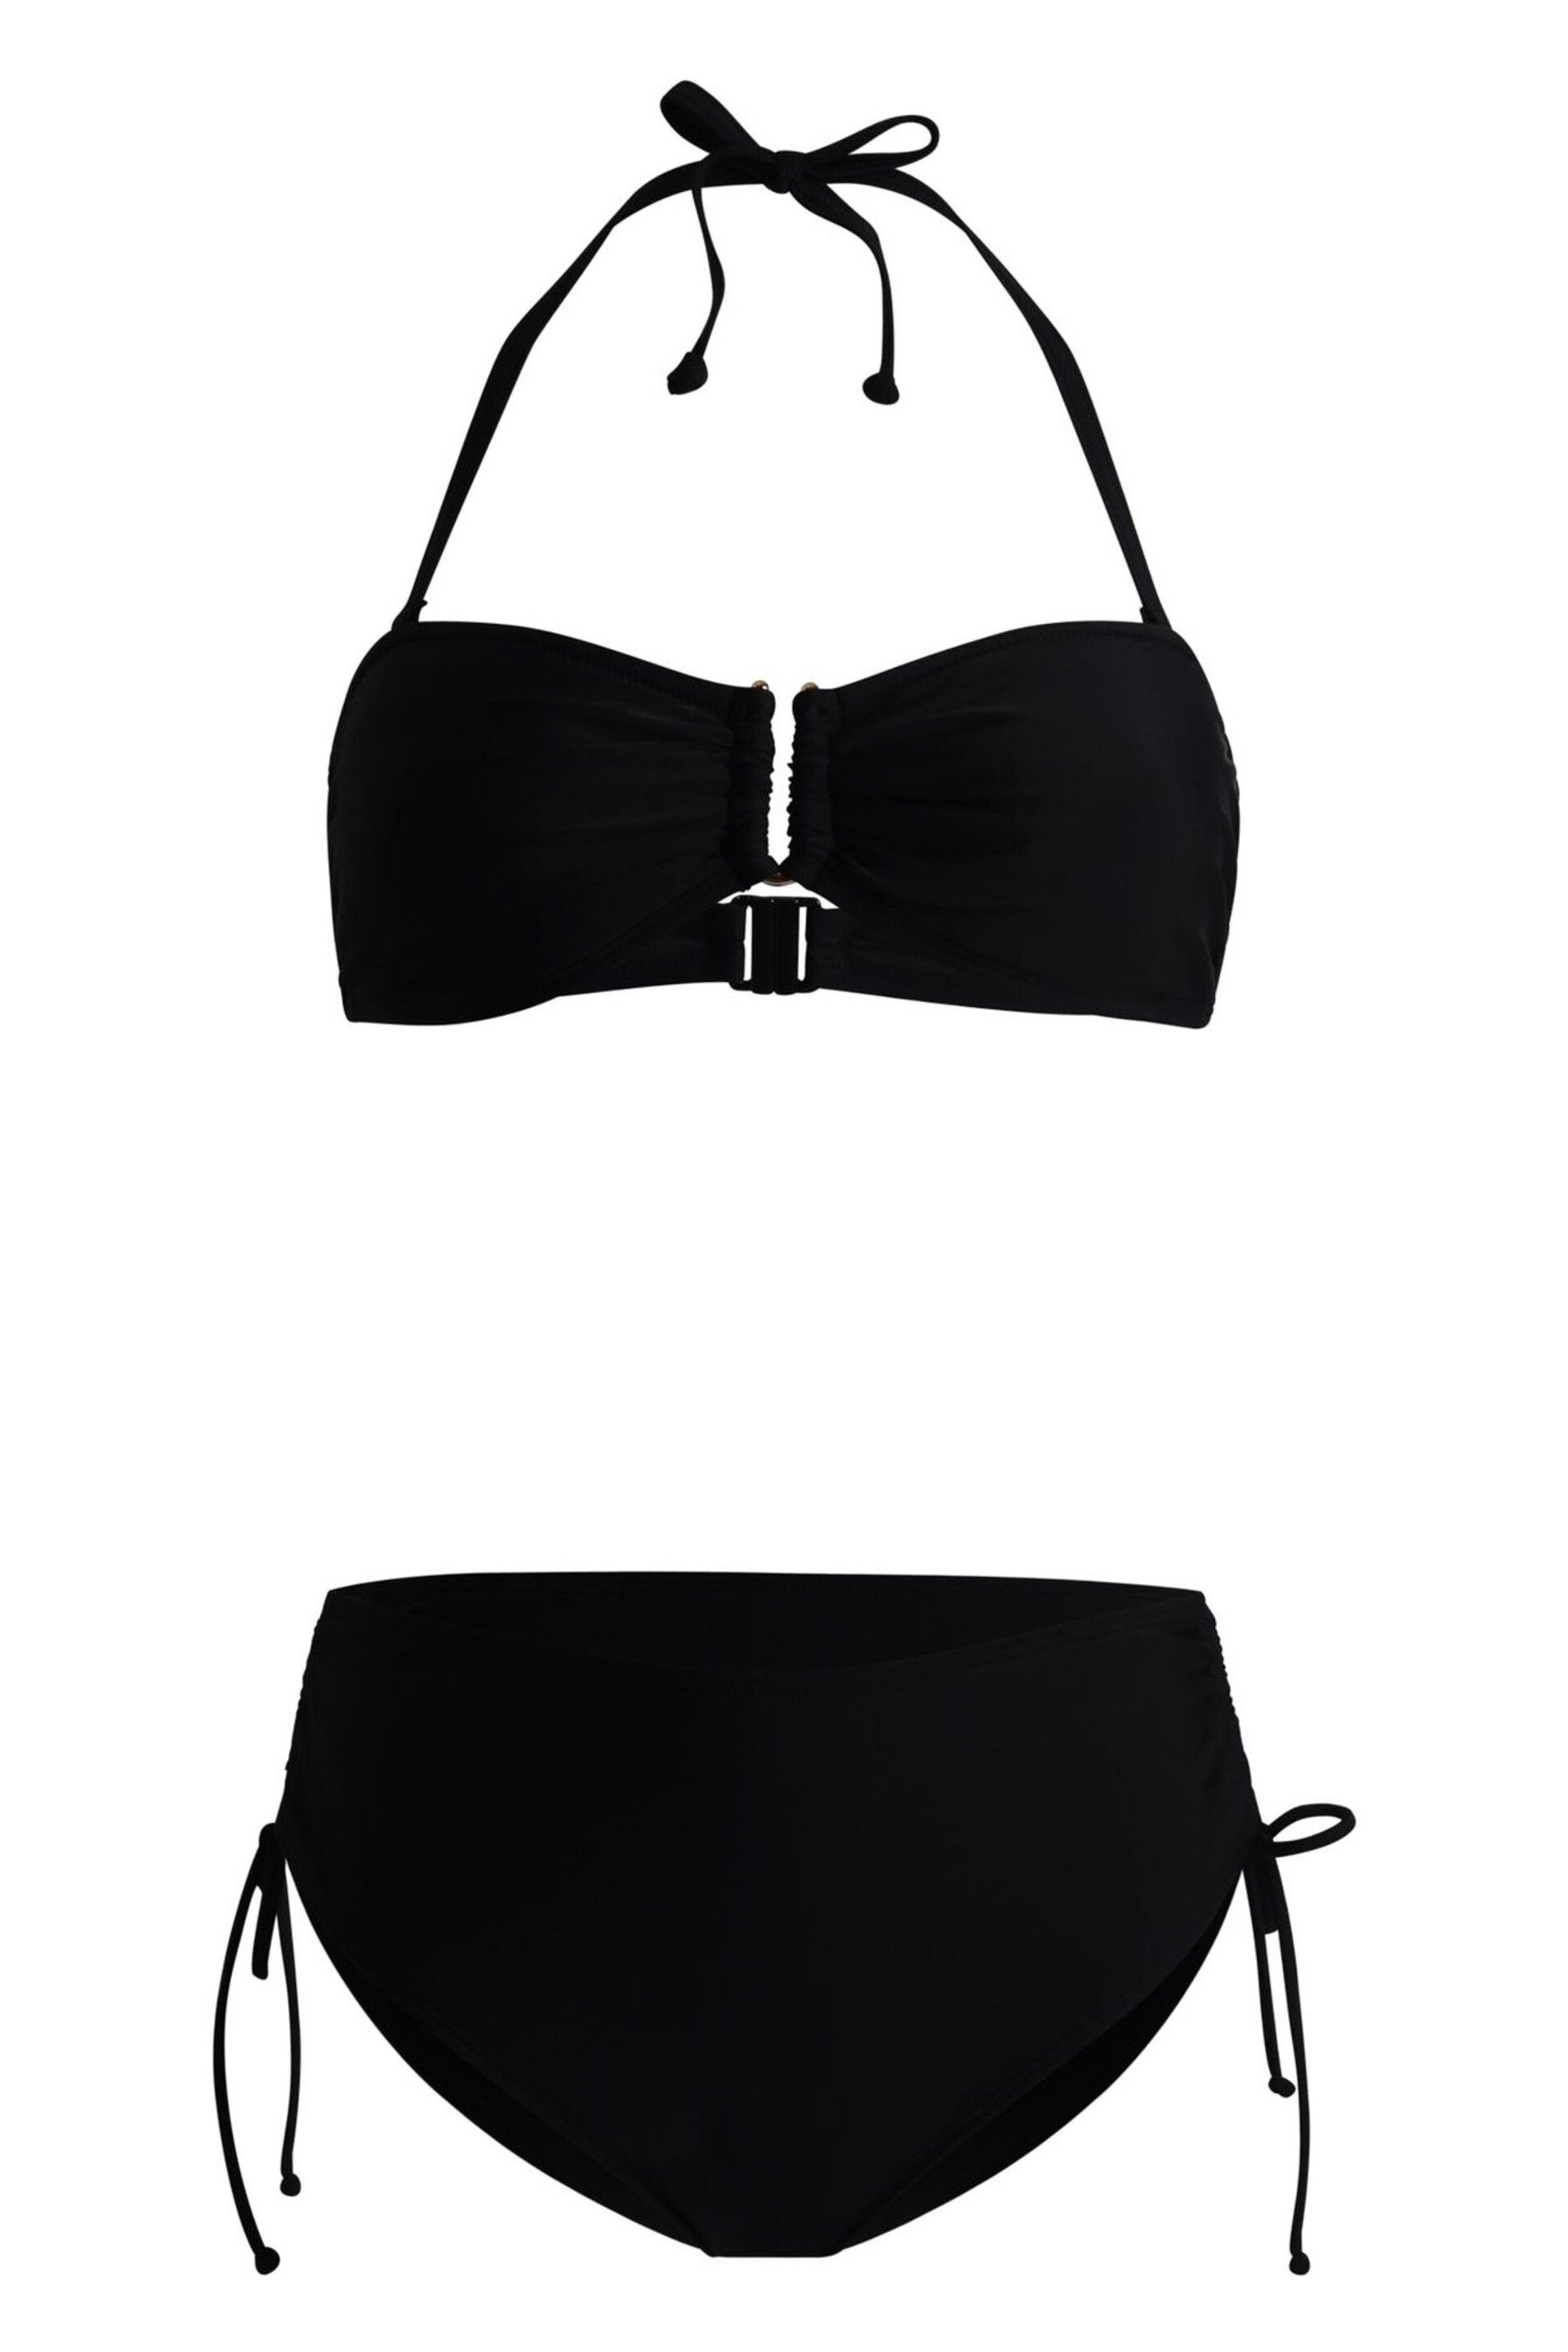 Linzi Black Sienna Bandeau Bikini With Detachable Straps - Image 4 of 5